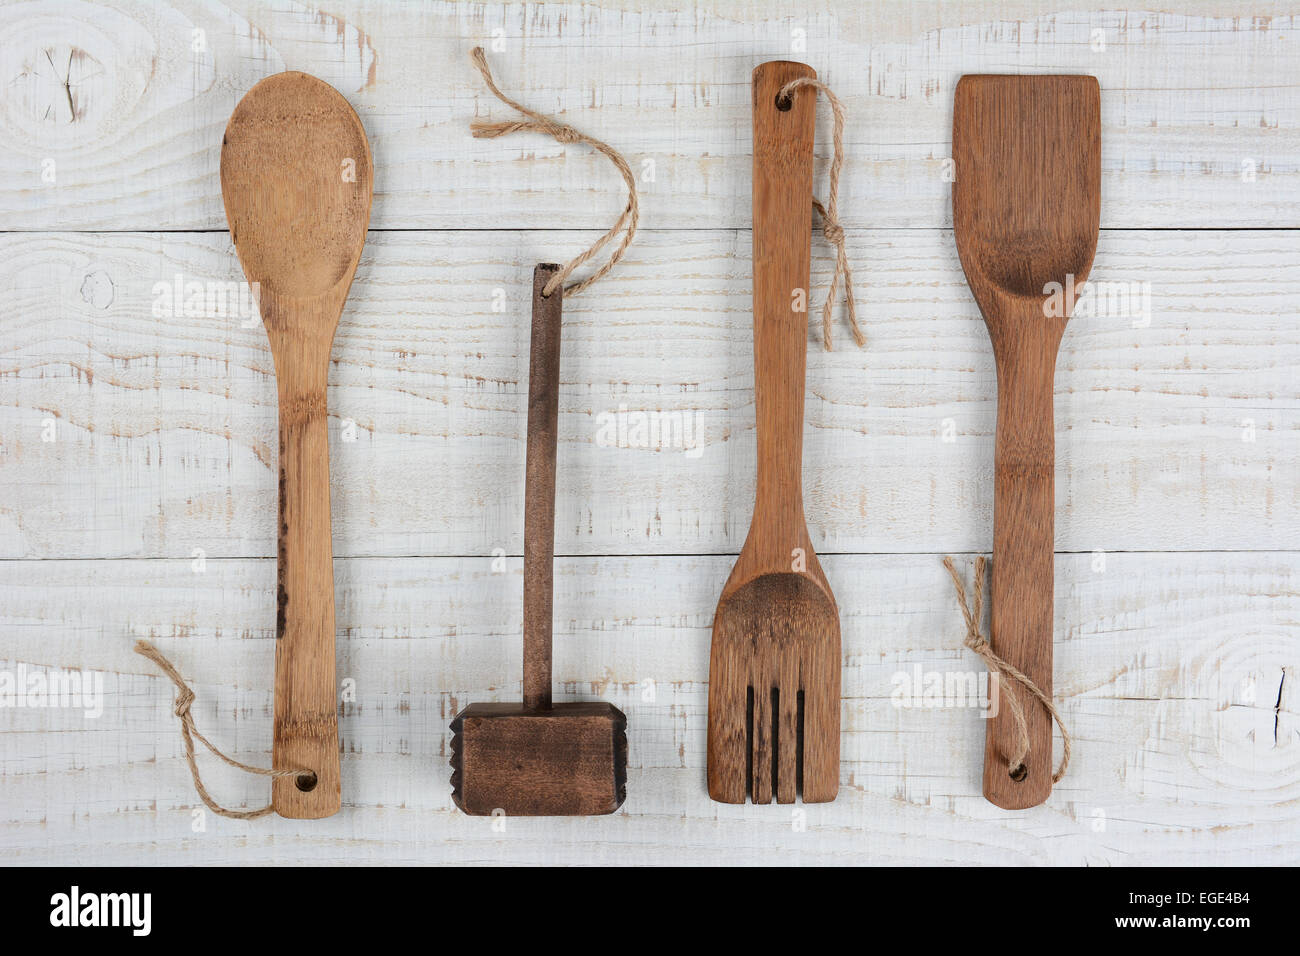 High angle libre d'une cuillère en bois, fourchette et spatule, maillet sur une table de cuisine blancs. Format horizontal. Banque D'Images